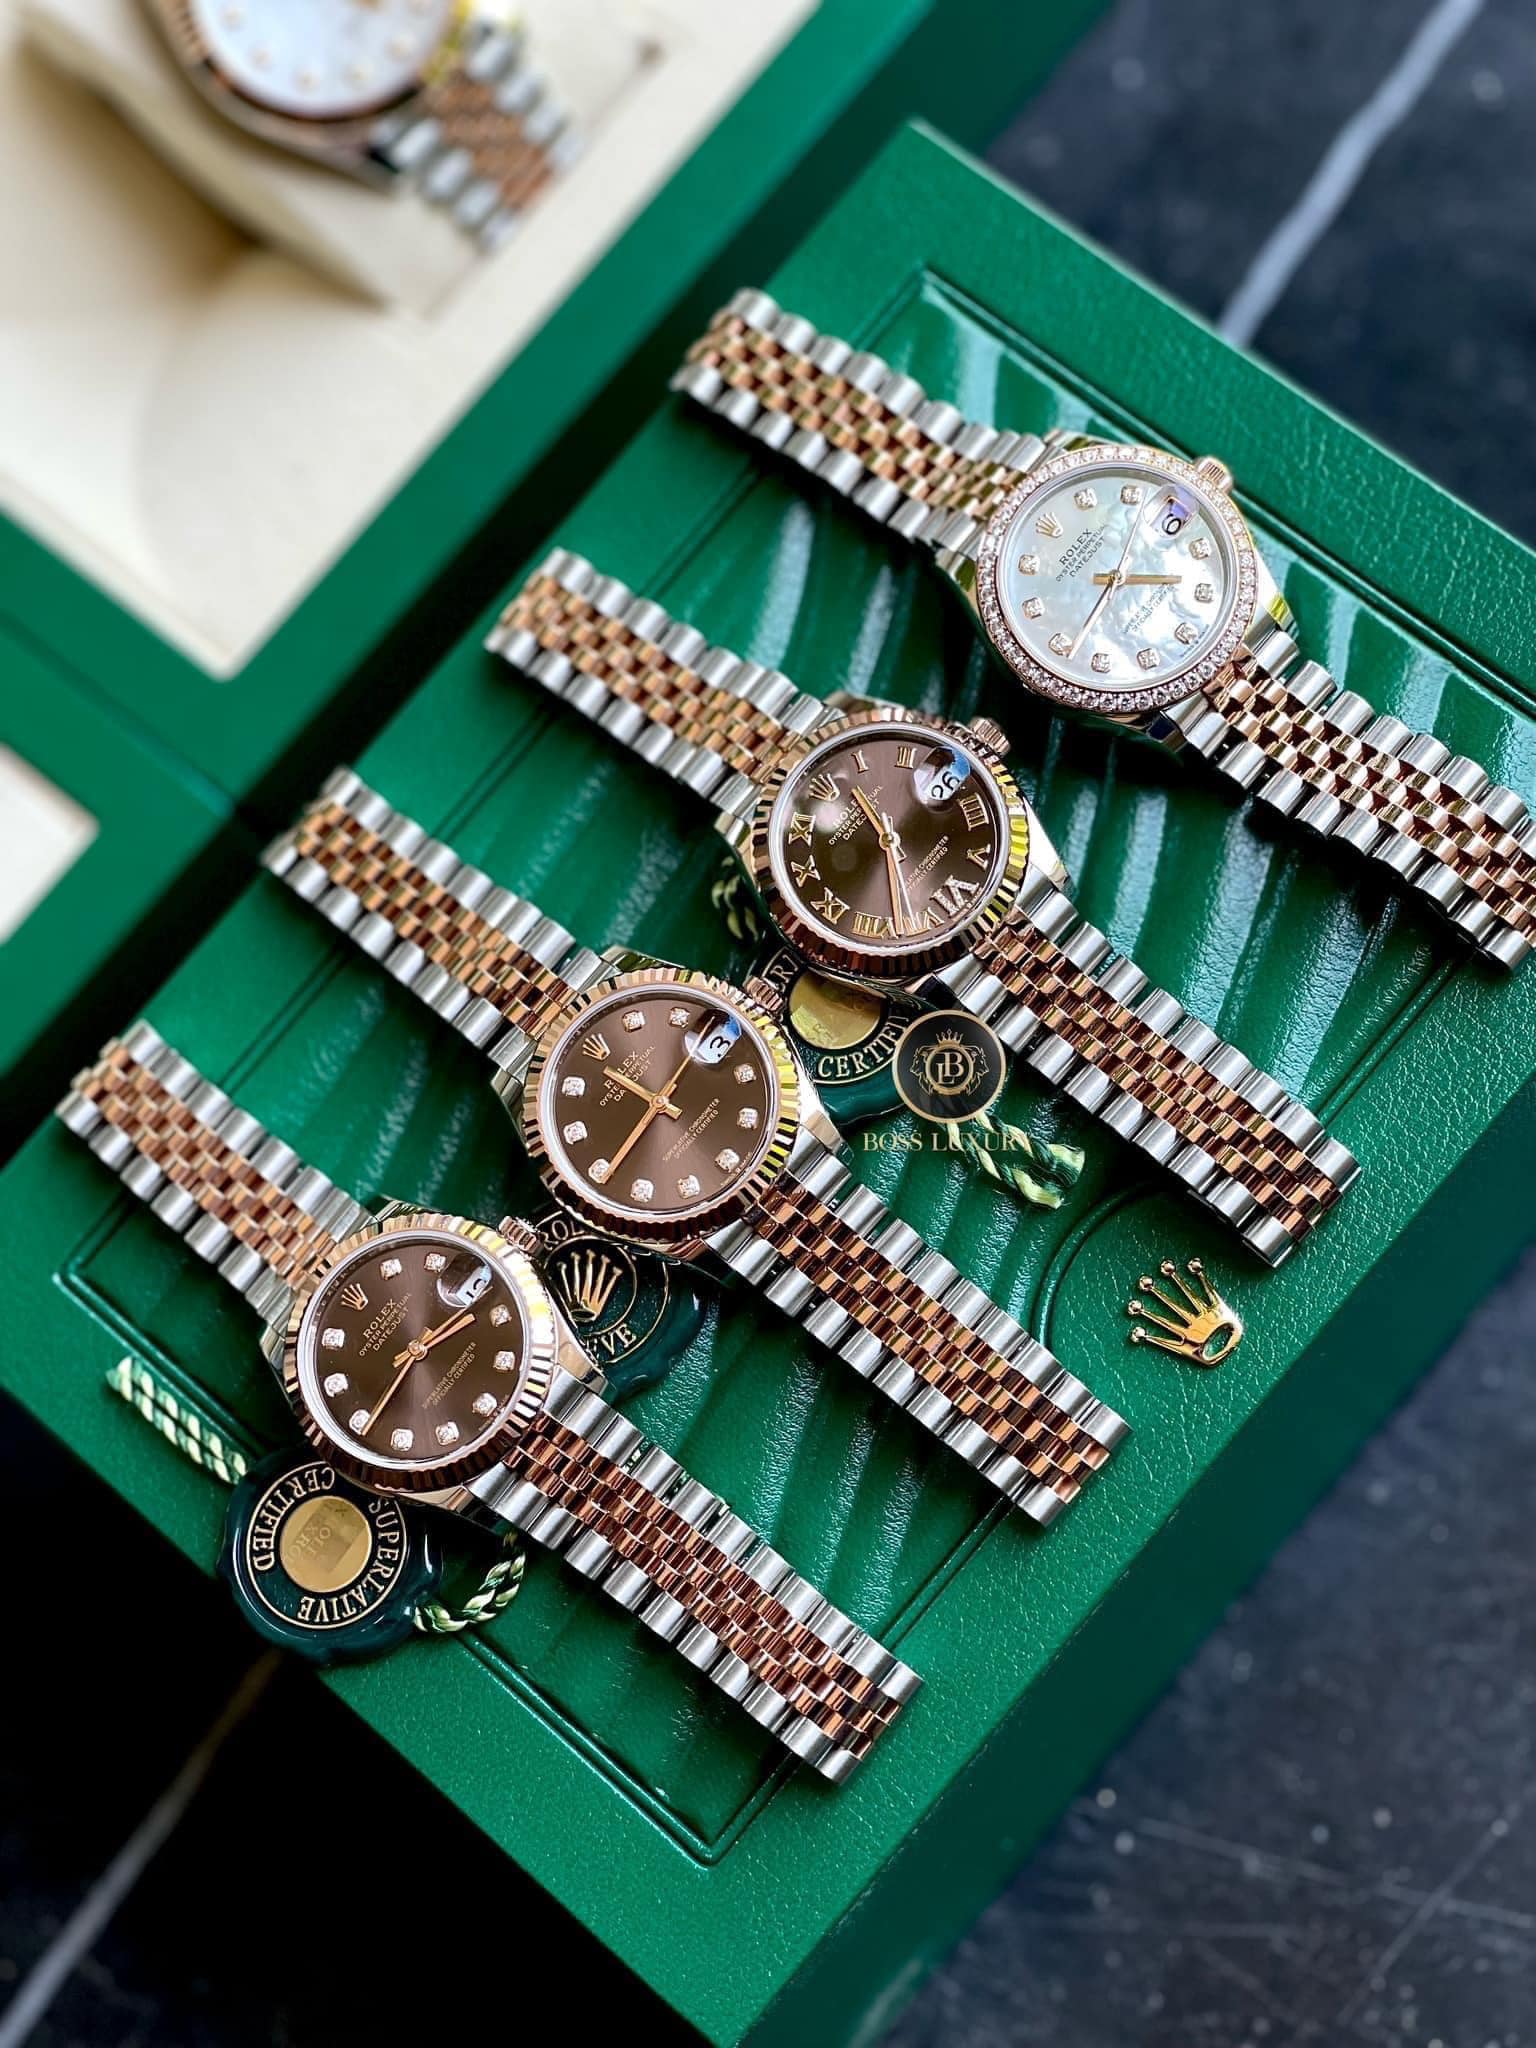 Rolex là thương hiệu đồng hồ hạng sang, đắt đỏ và xa xỉ bậc nhất hiện nay